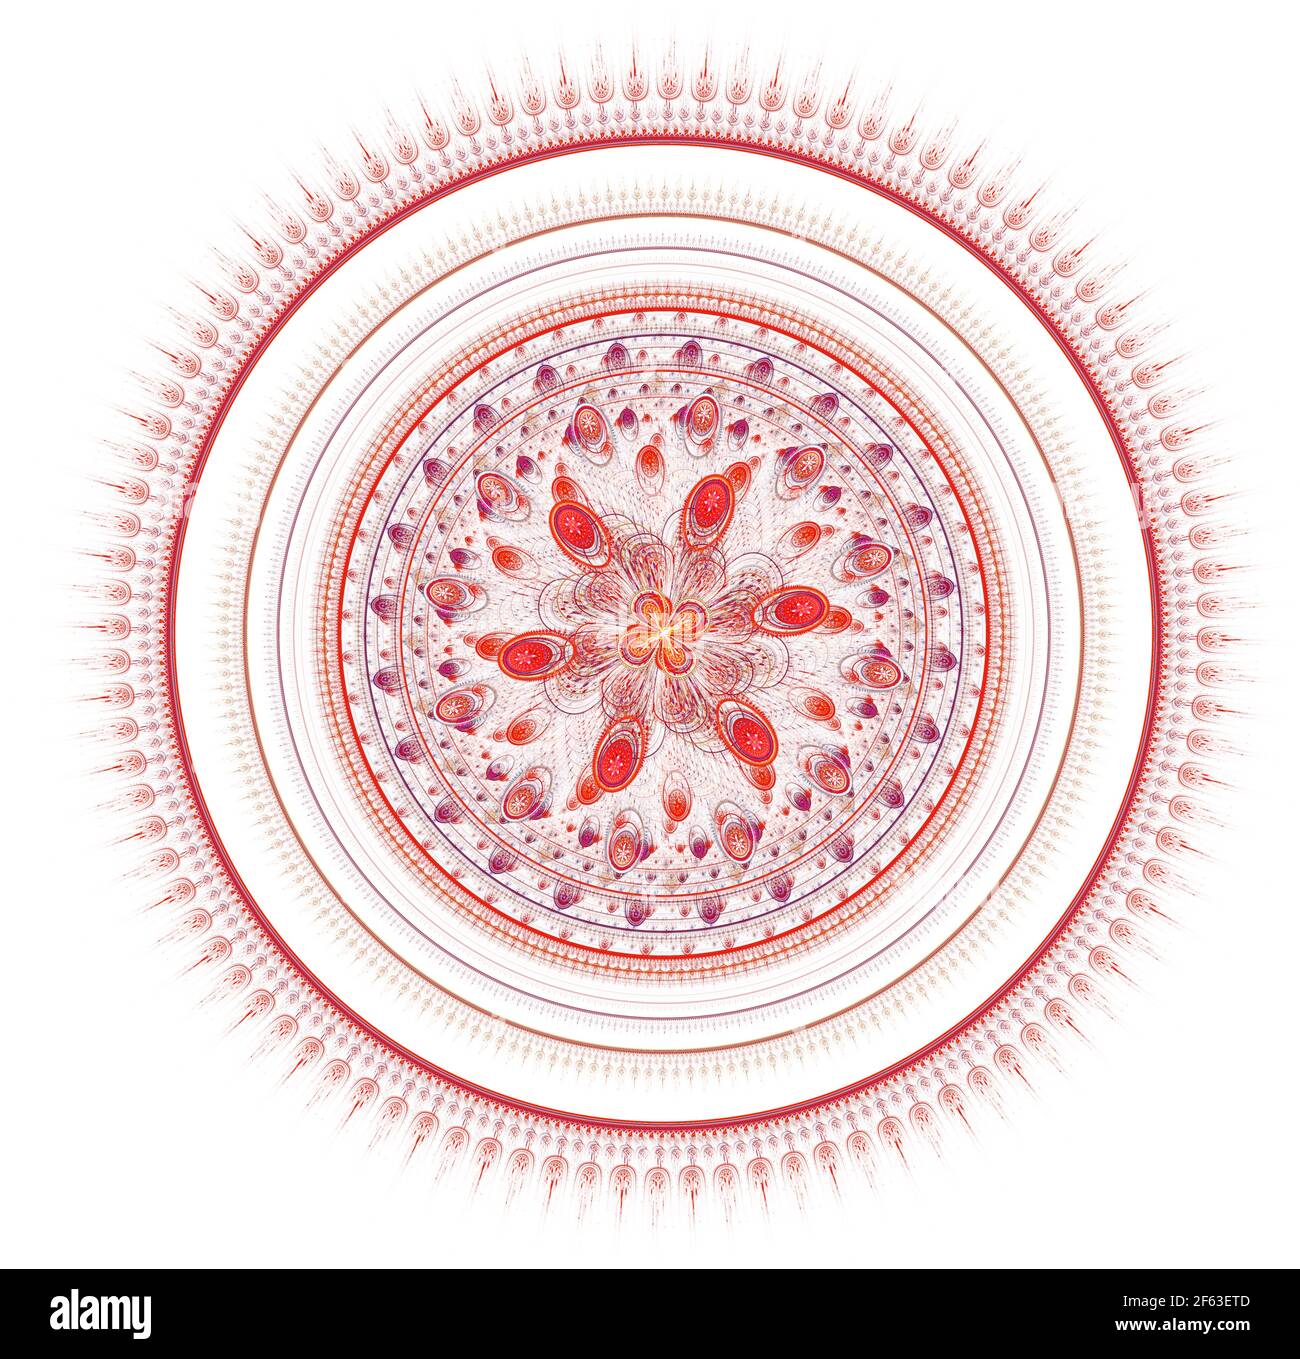 Fraktales Mandala auf dem Hintergrund. Verrückte abstrakte fraktale Formen mit kaleidoskopischen Muster Stockfoto